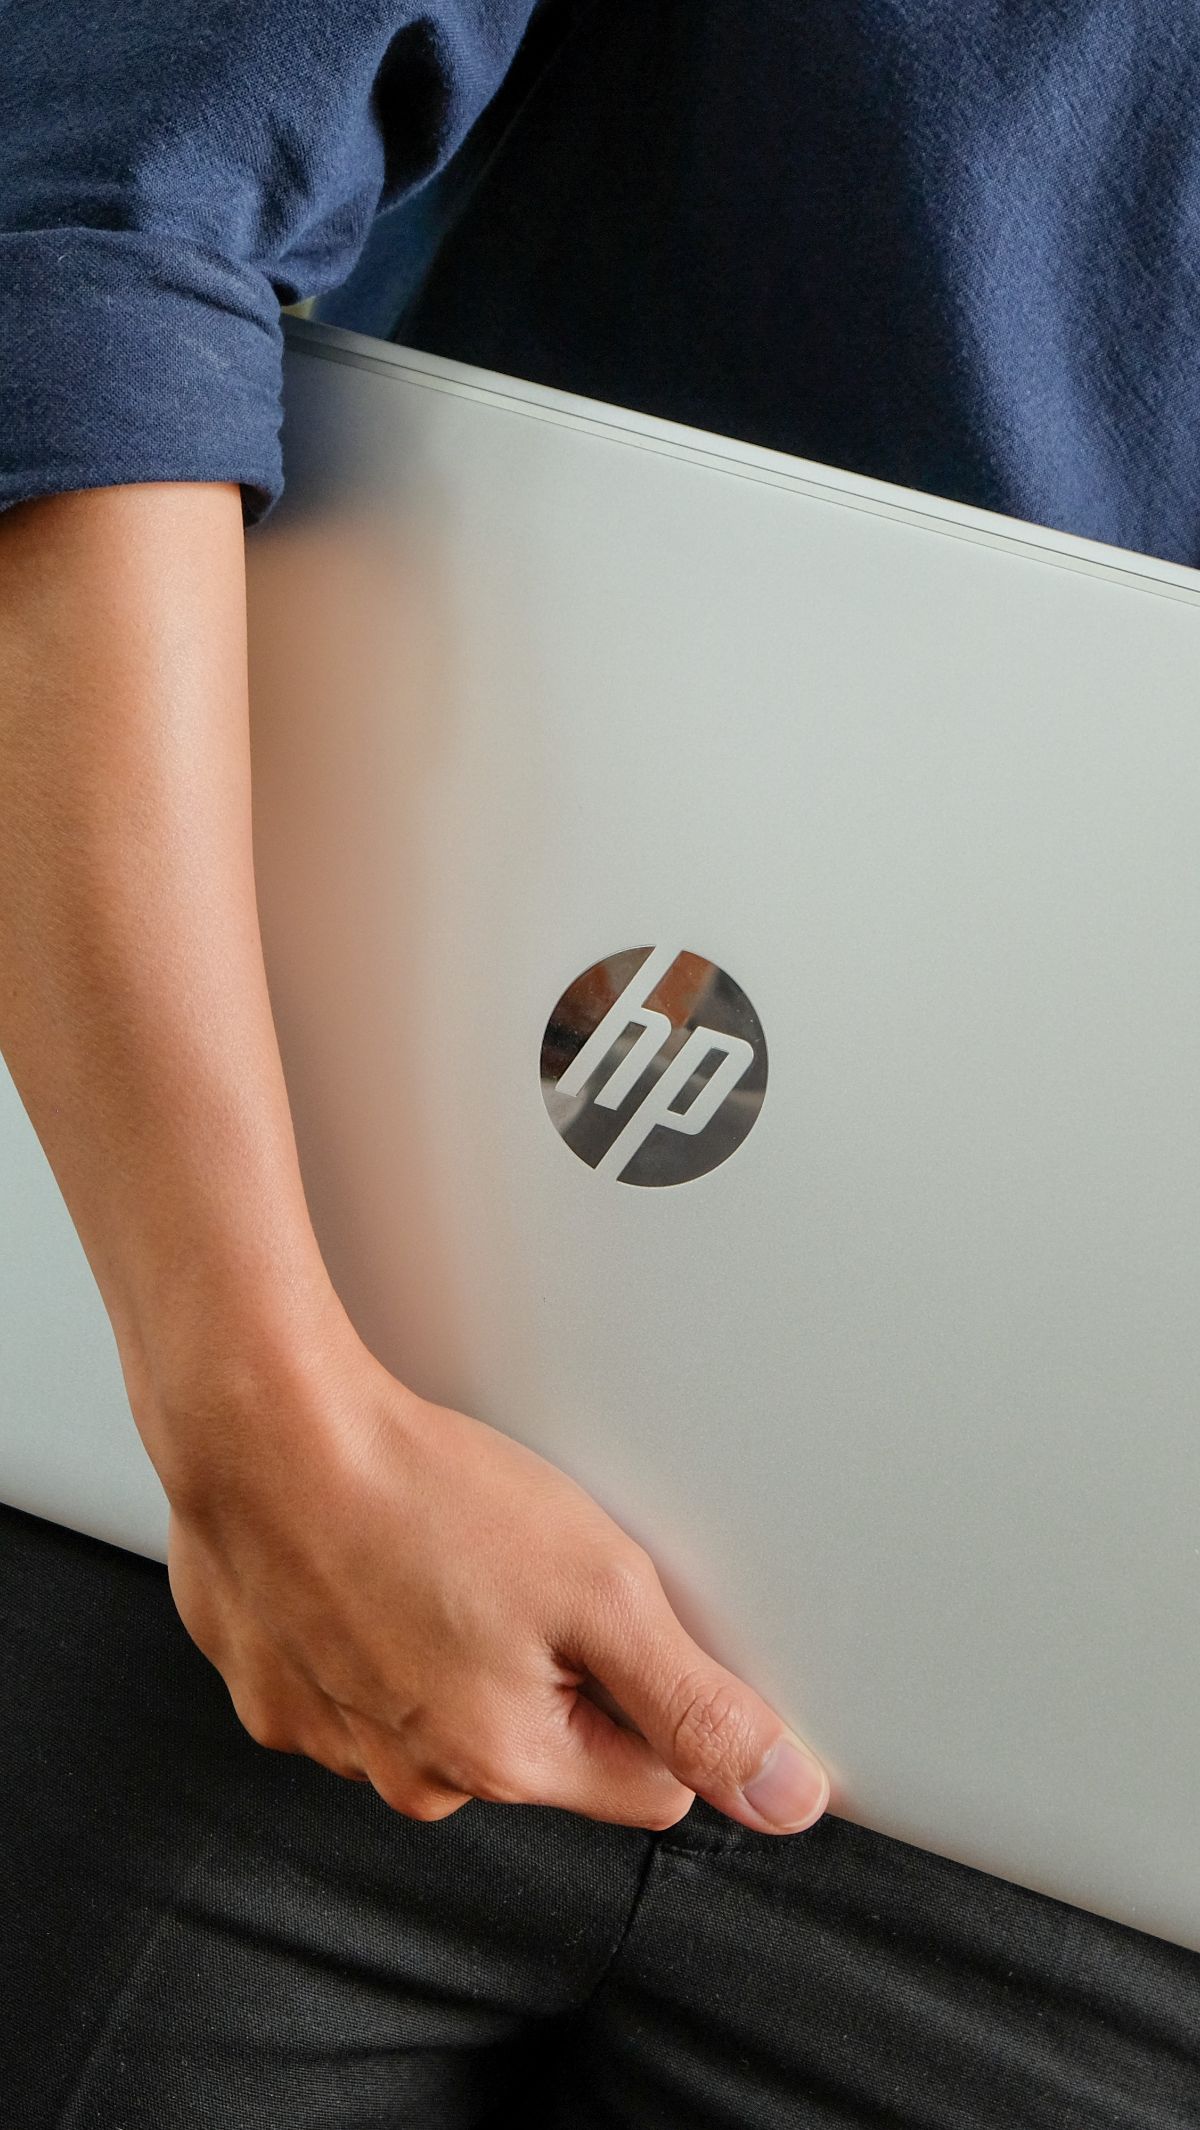 HP Rilis 2 Laptop dan Printer Baru untuk Hybrid Working, Cek Harganya<br>